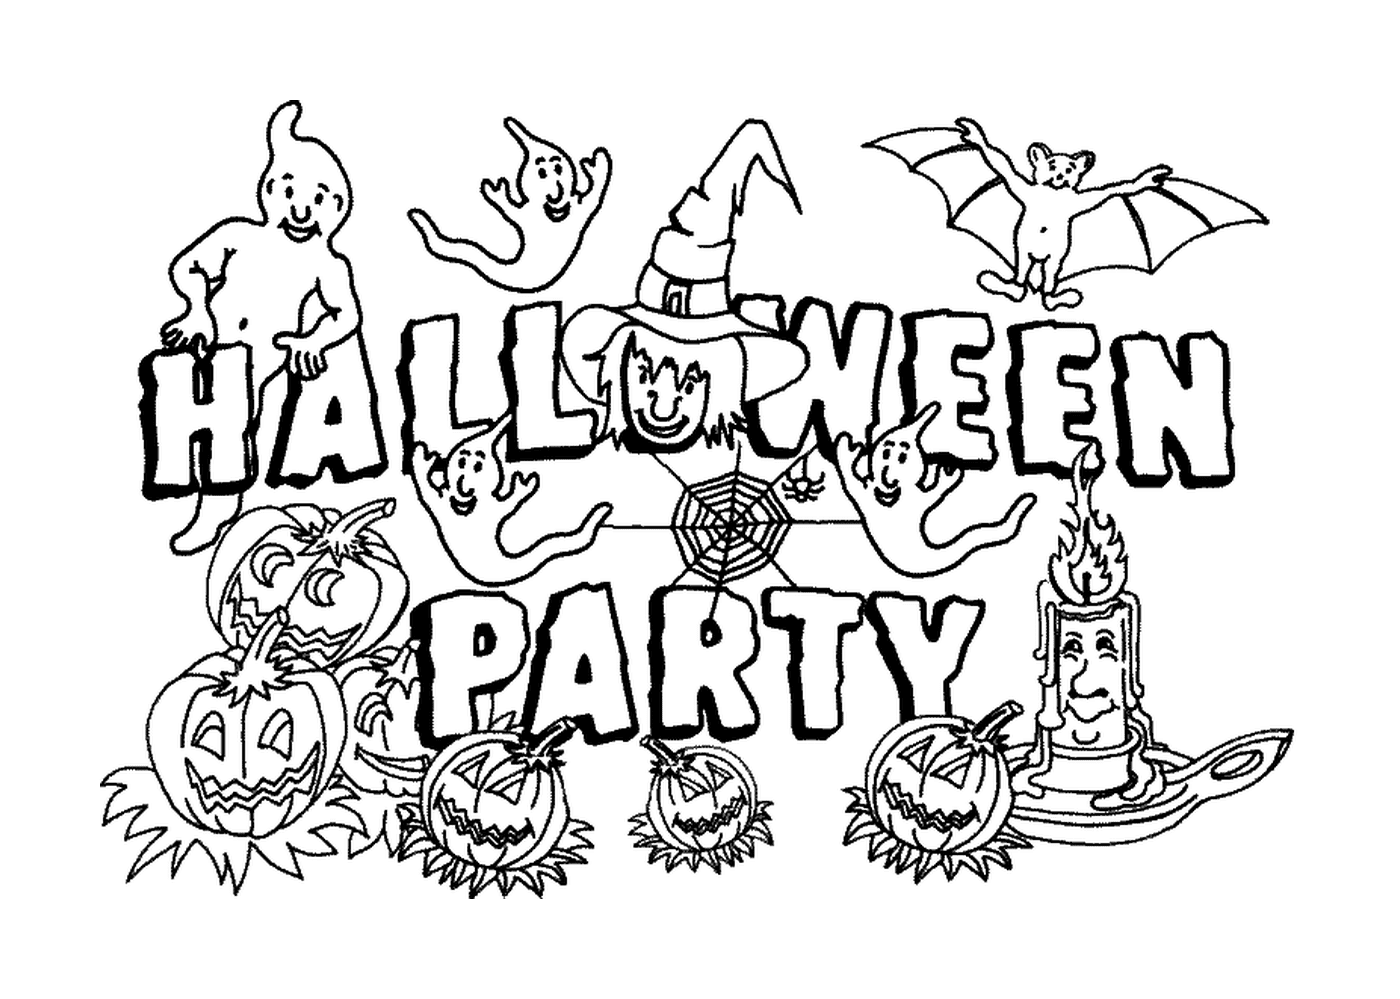  Halloween Party mit Kürbissen und Geistern 